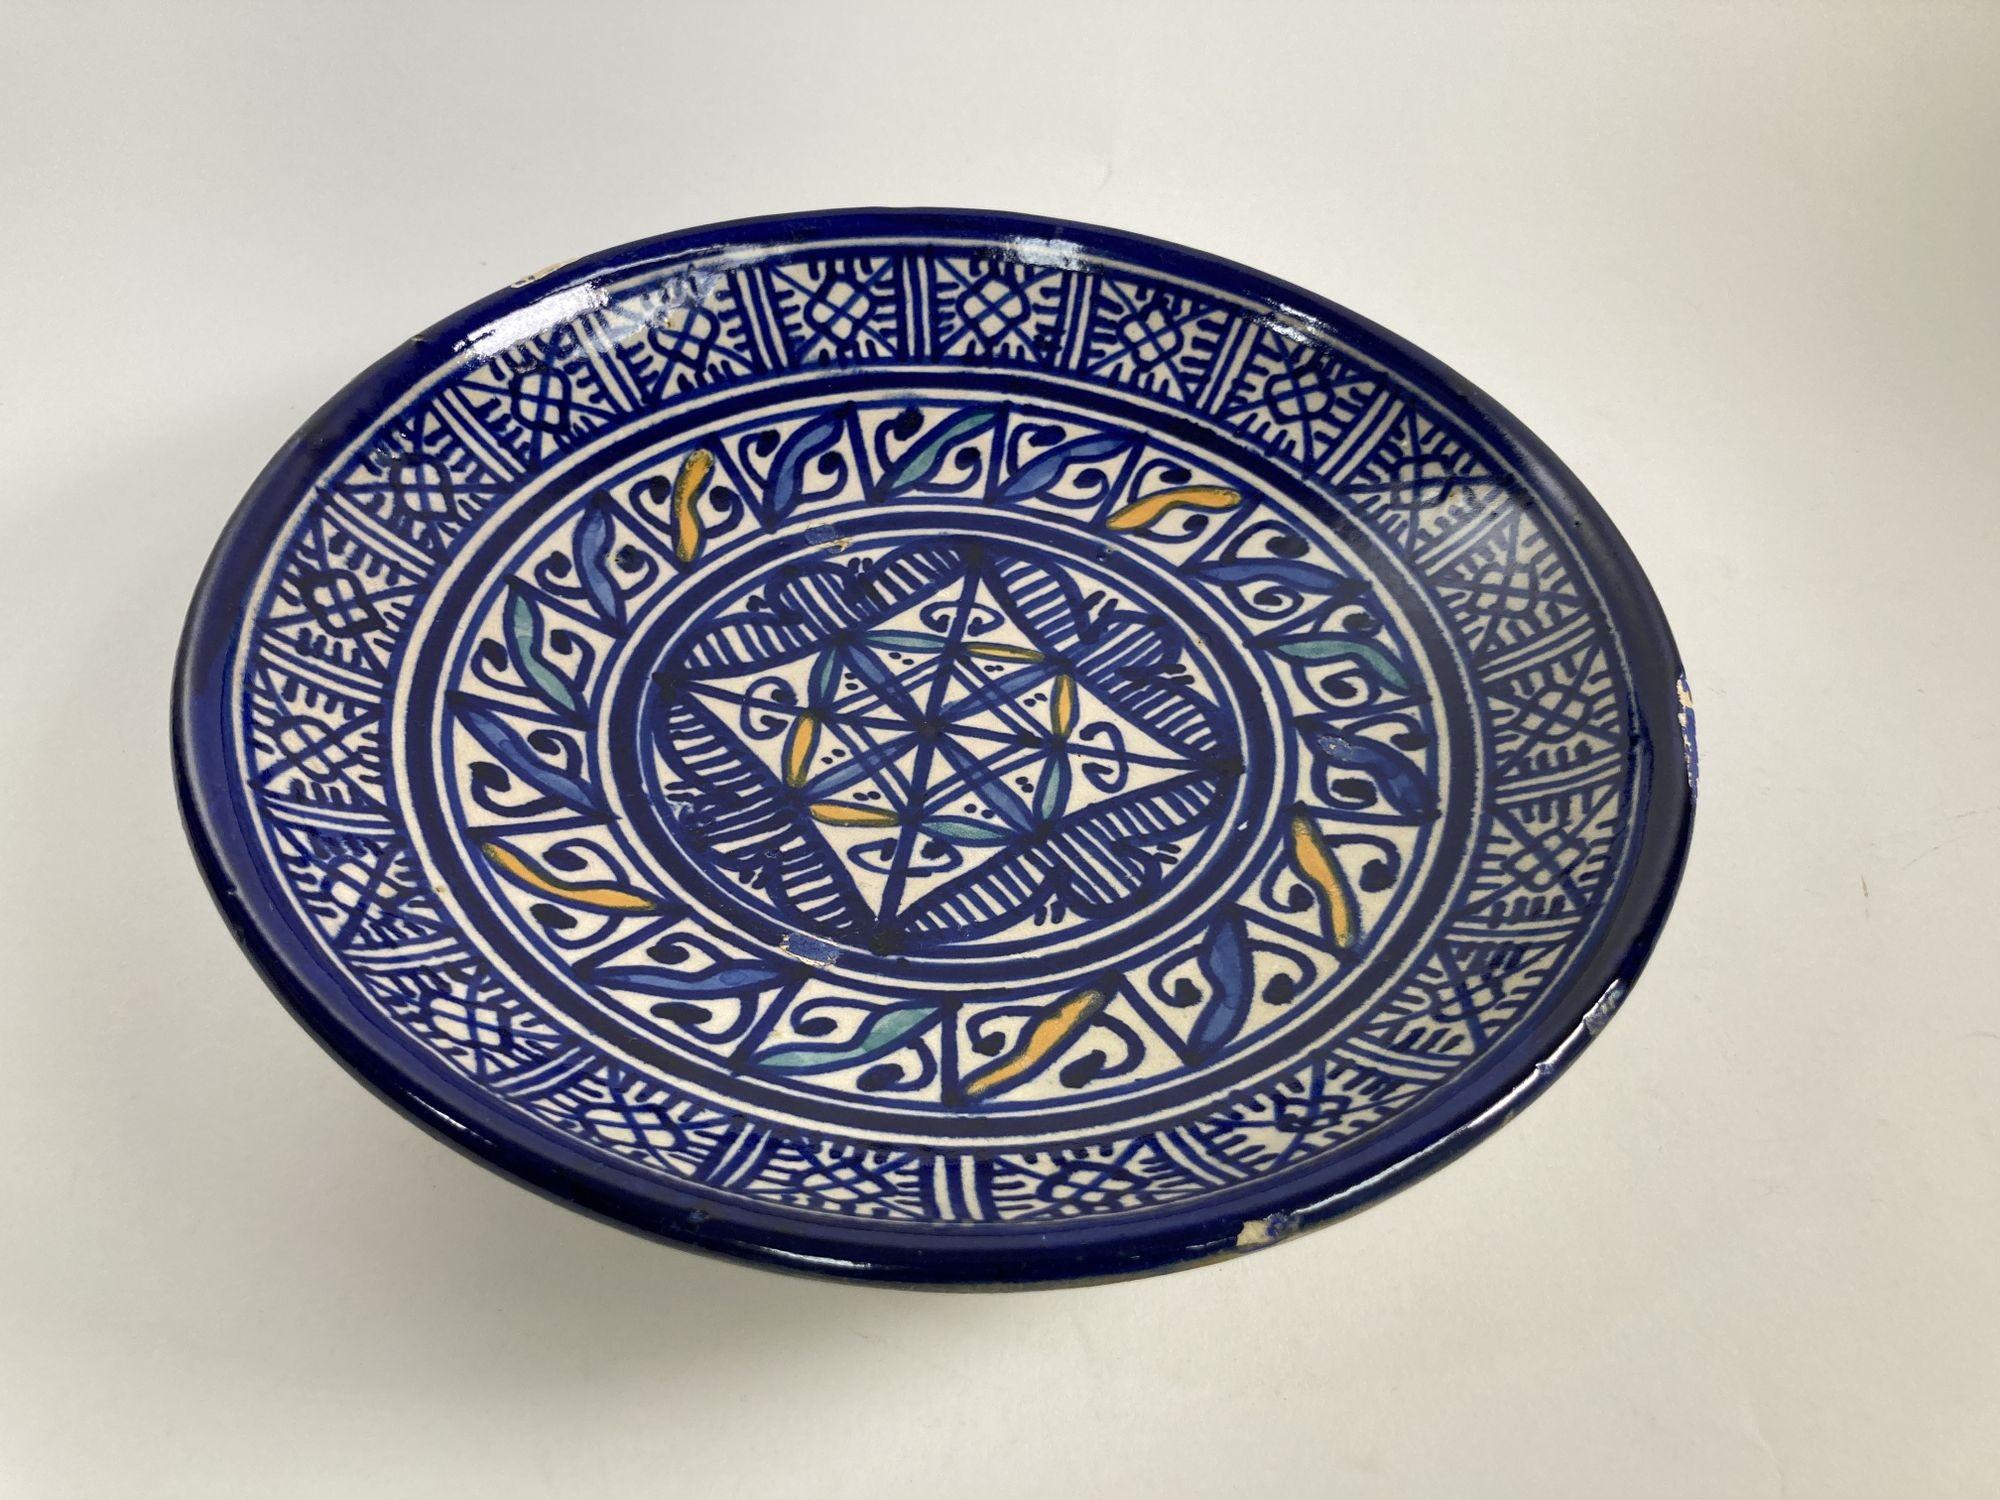 Assiette en céramique marocaine bleue du début du 20e siècle, fabriquée à la main à Fès.
Bol décoratif en céramique, fabriqué à la main et émaillé, provenant de Fès, au Maroc.
Il présente un motif mauresque élaboré peint à la main en bleu et blanc